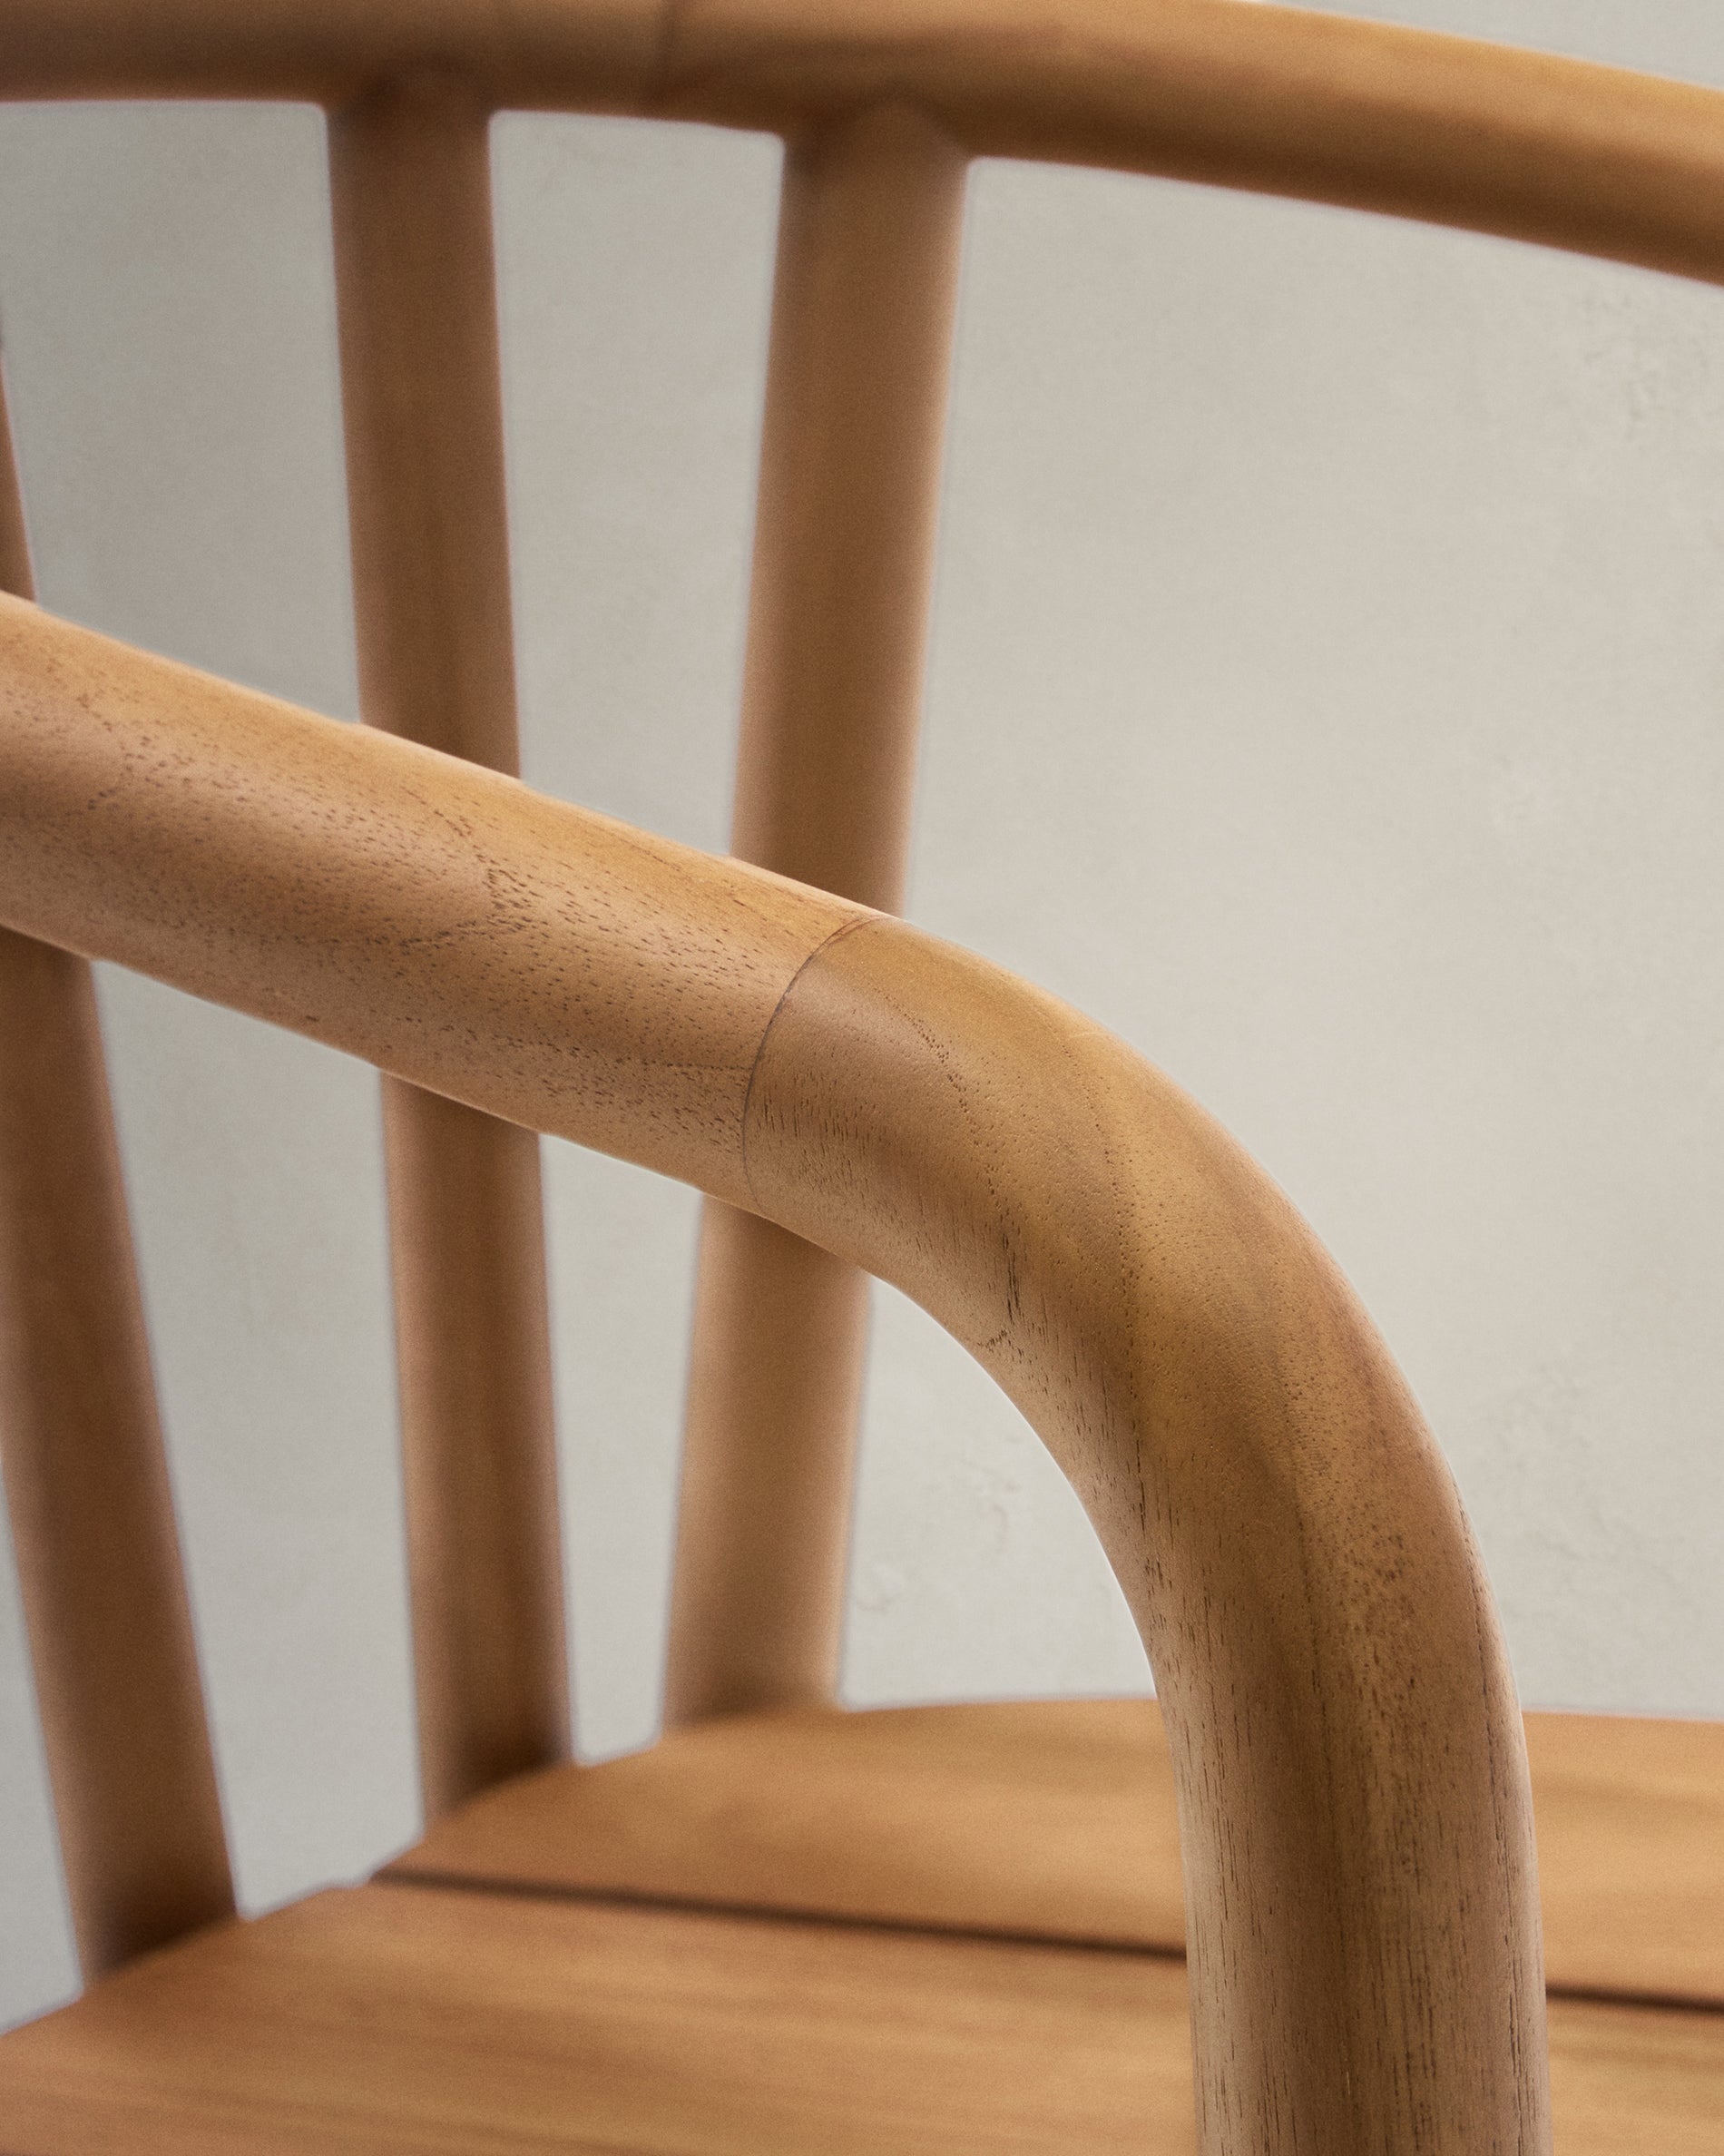 Turqueta összecsukható szék, 100% FSC minősített tömör teakfából